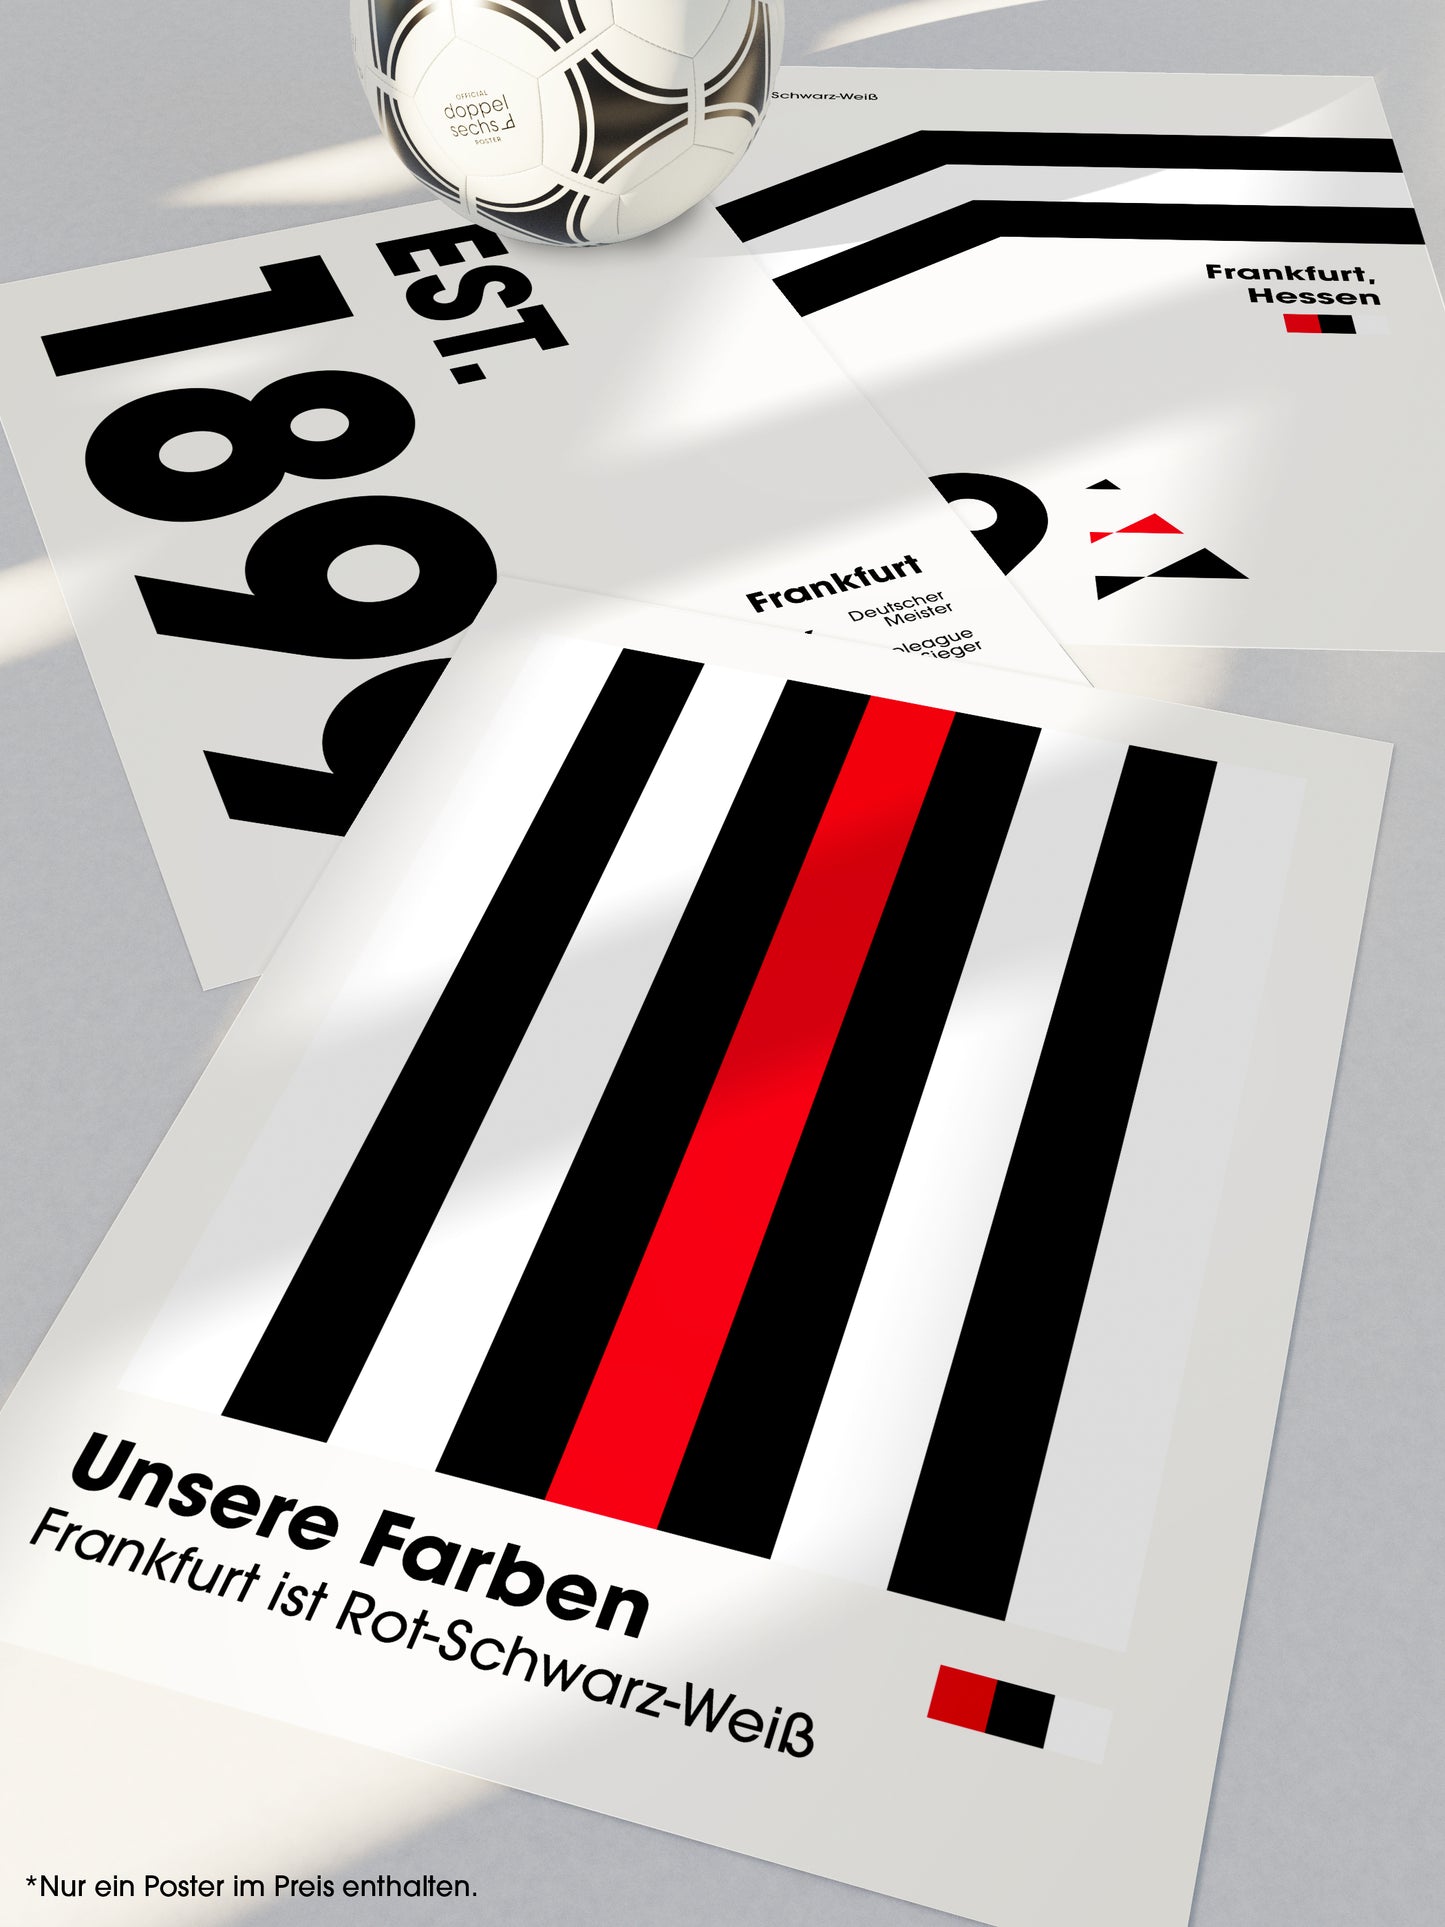 Frankfurt - "Farben" Fußballposter